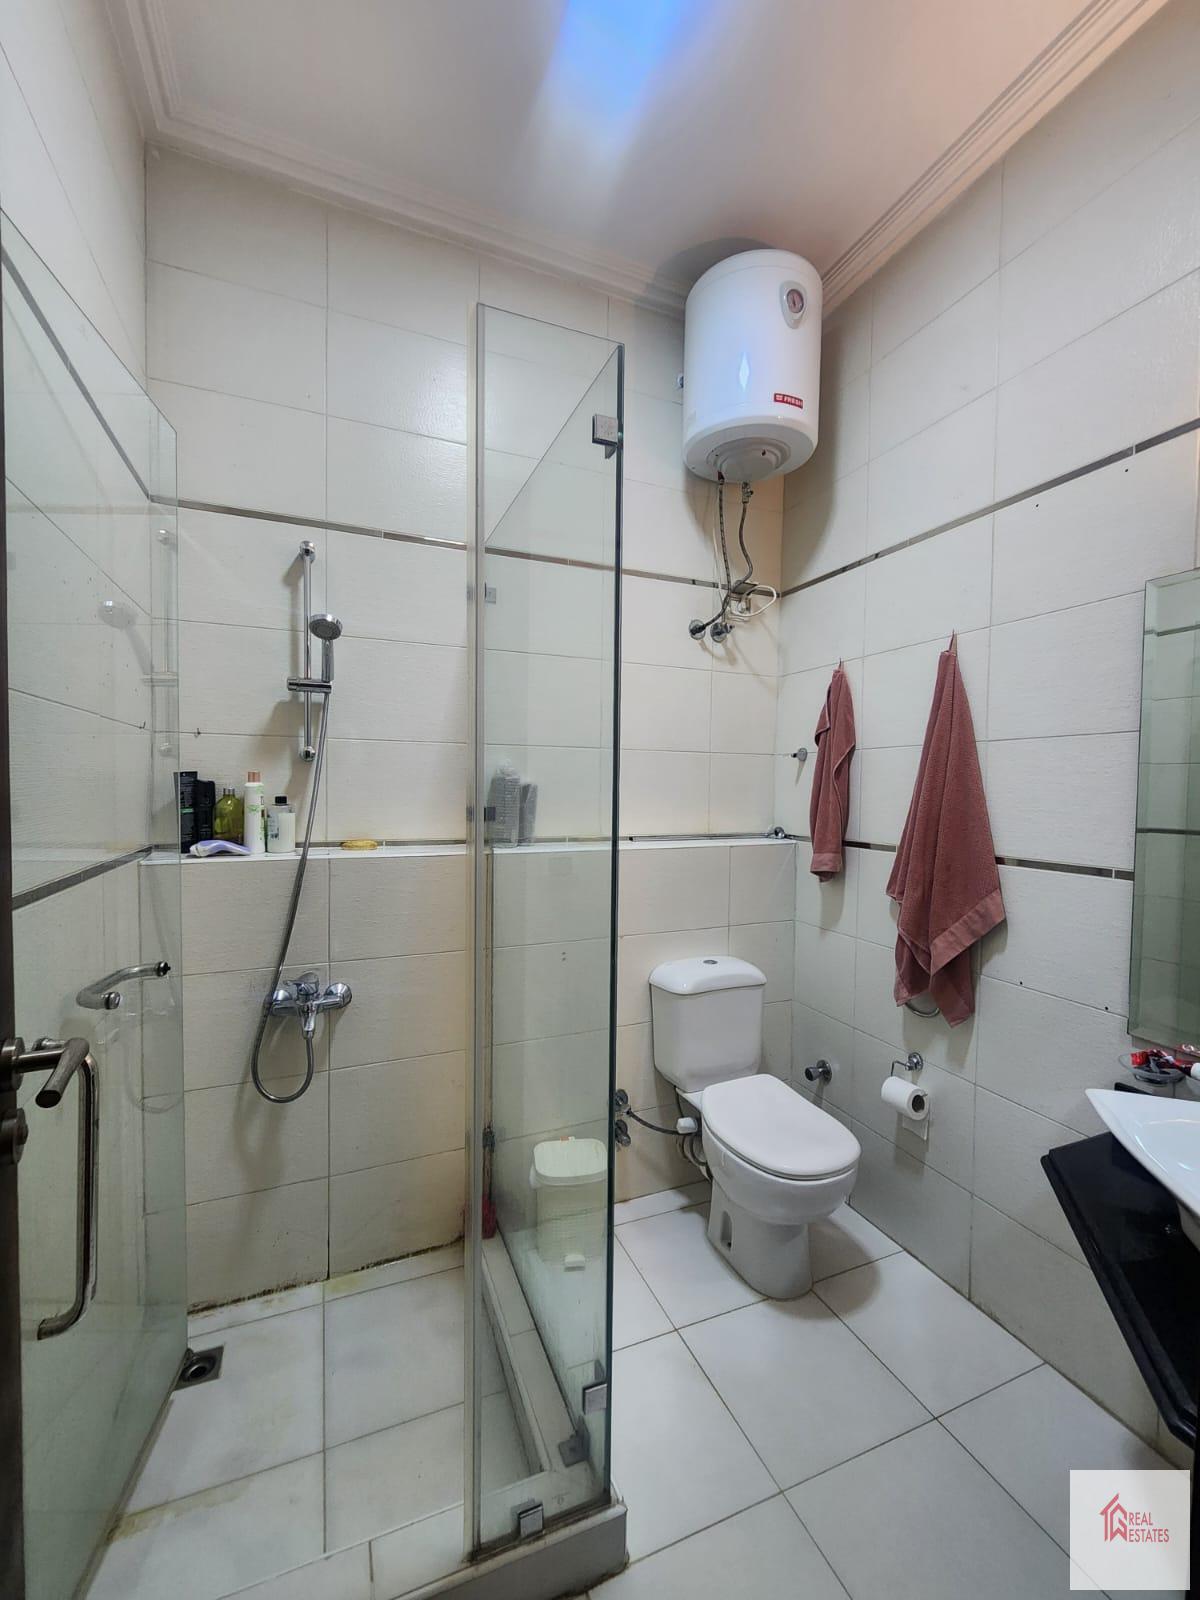 Appartements meublés modernes de 2 chambres et 2 salles de bains à louer Madi Sarayate